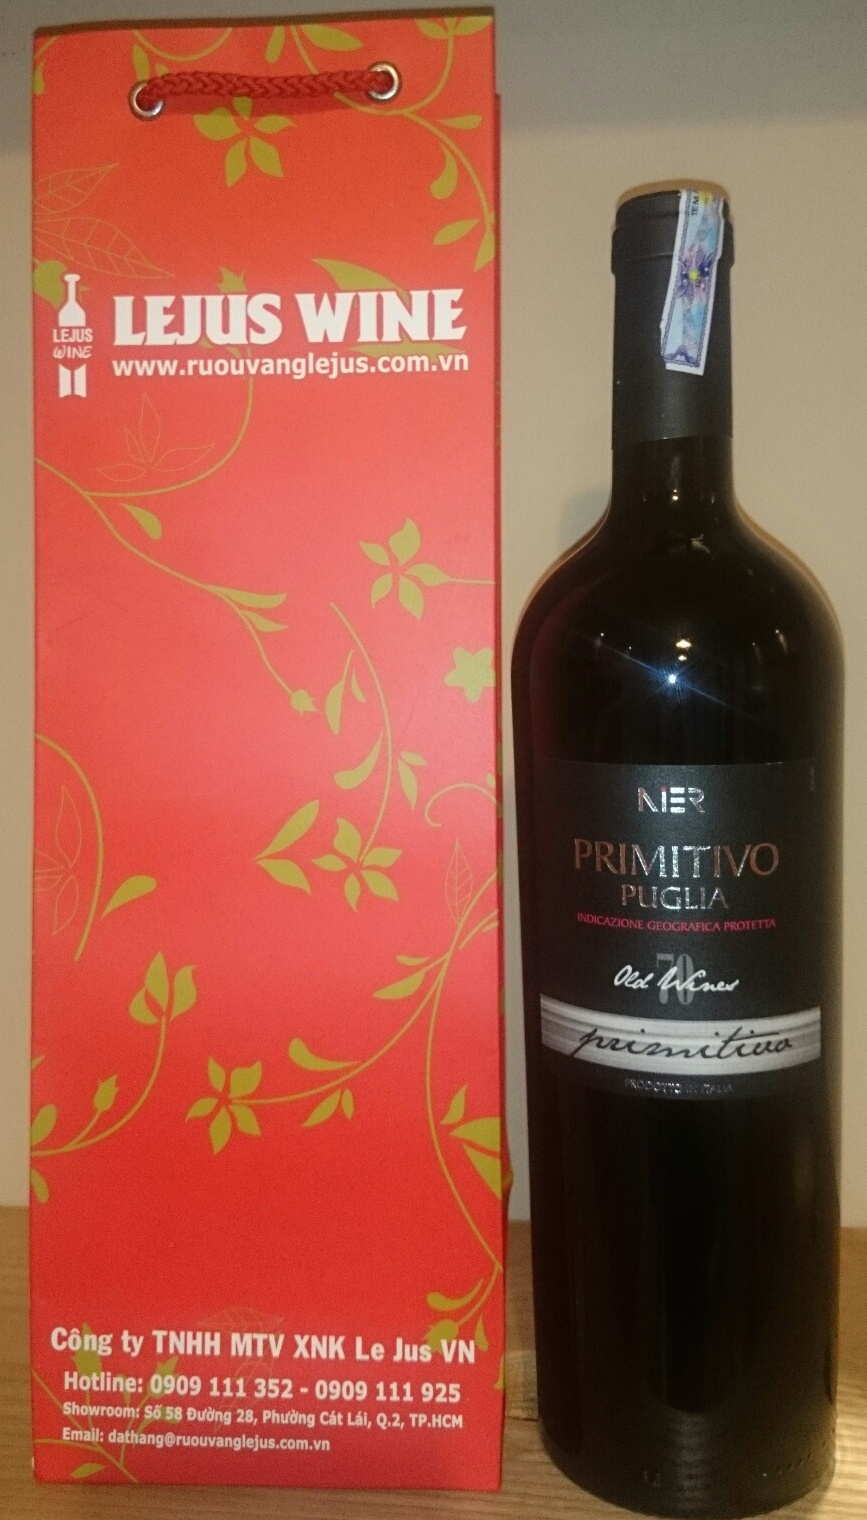 Primitivo 70 năm old vines - Rượu vang Ý nhập khẩu